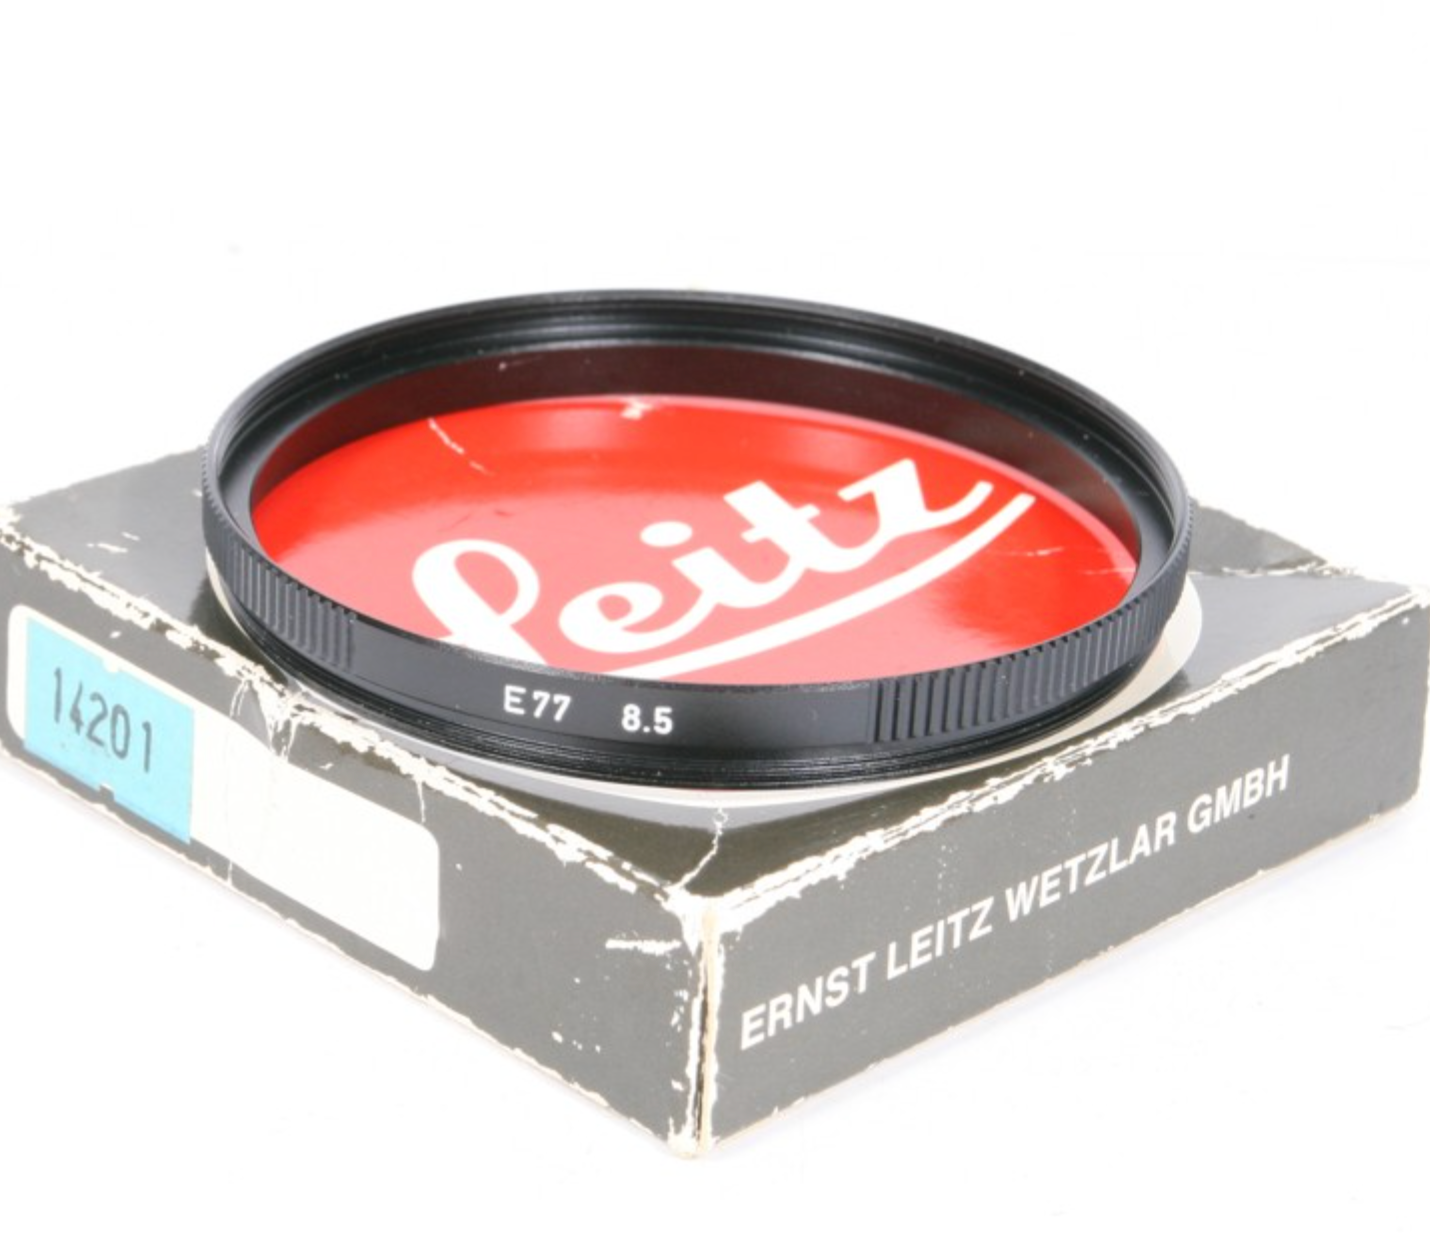 Leica 14201 adapter E77 8.5